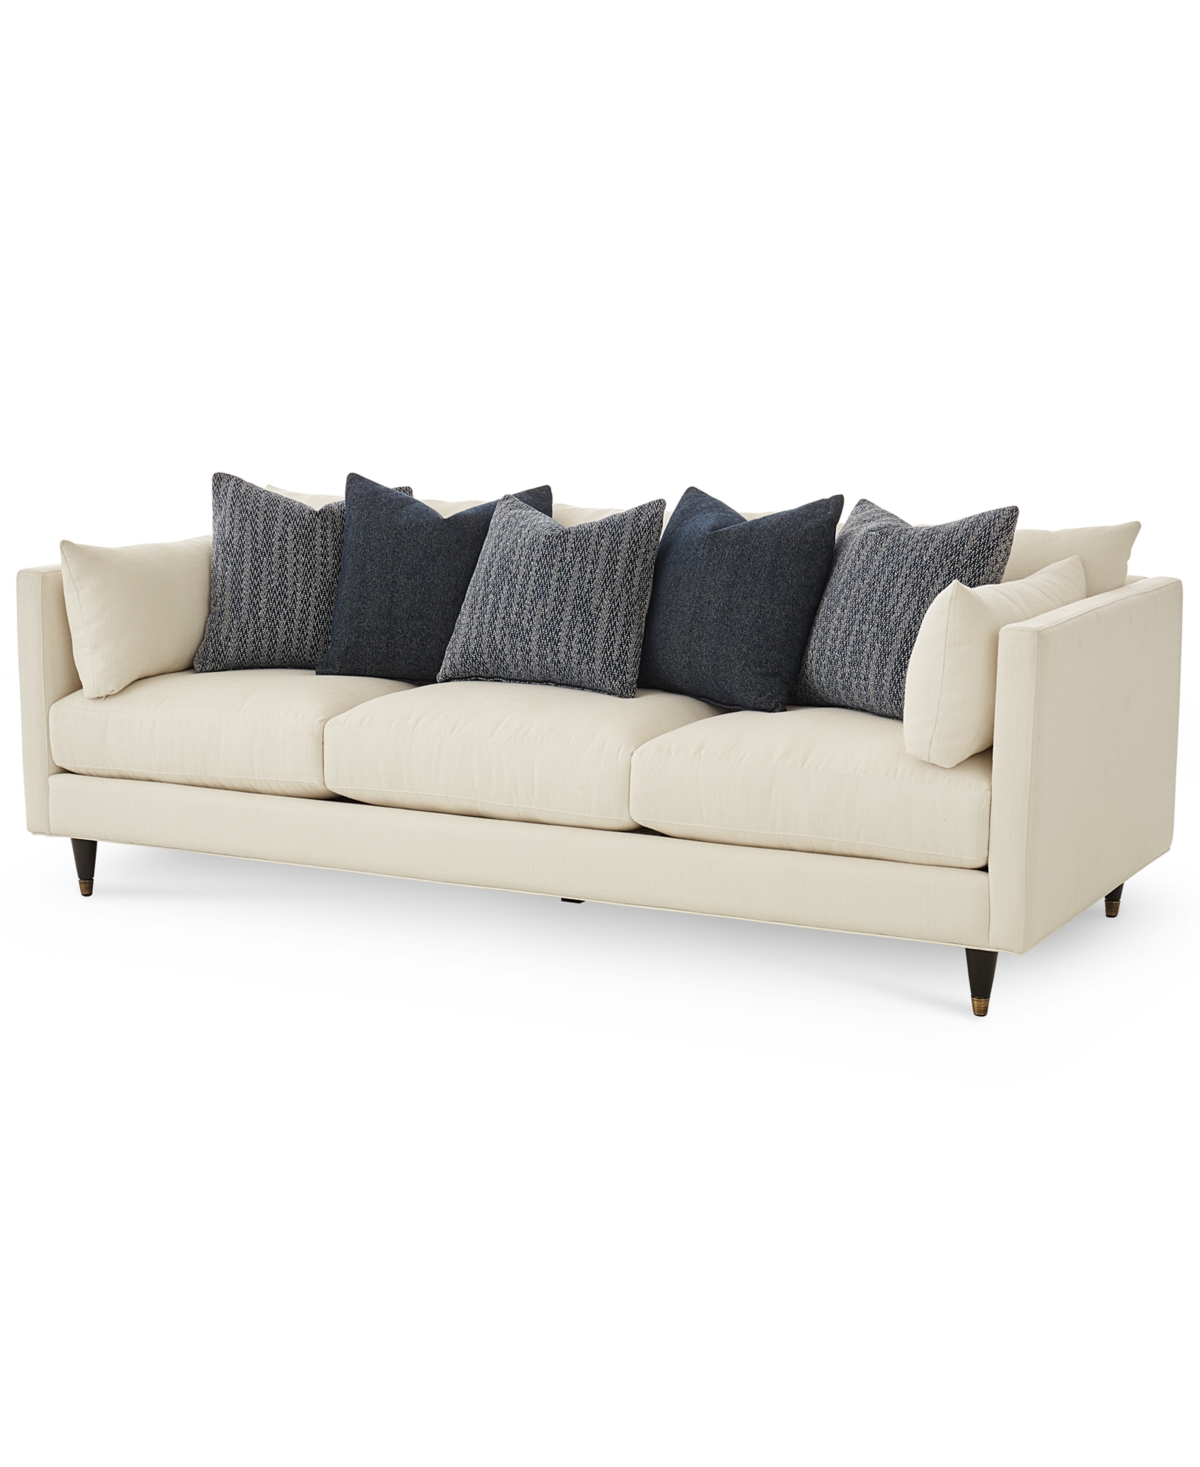 Bostal 98 Fabric Estate Sofa, Created for Macys